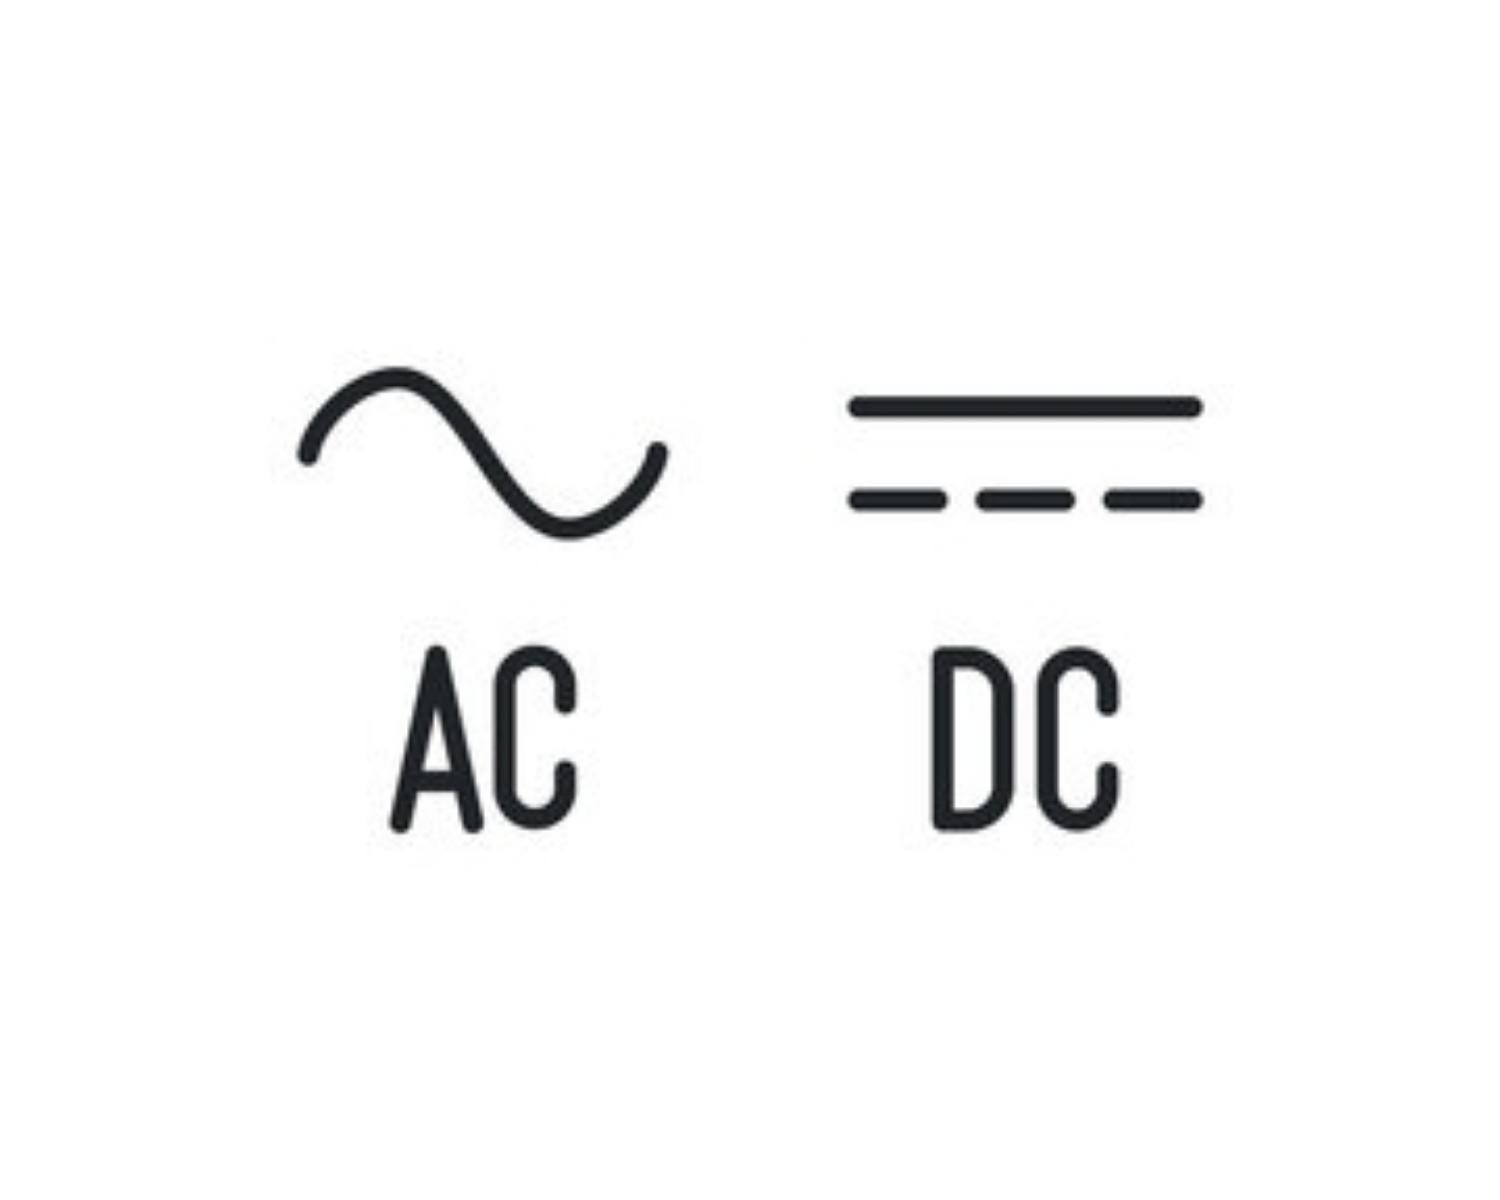 AC alternating current